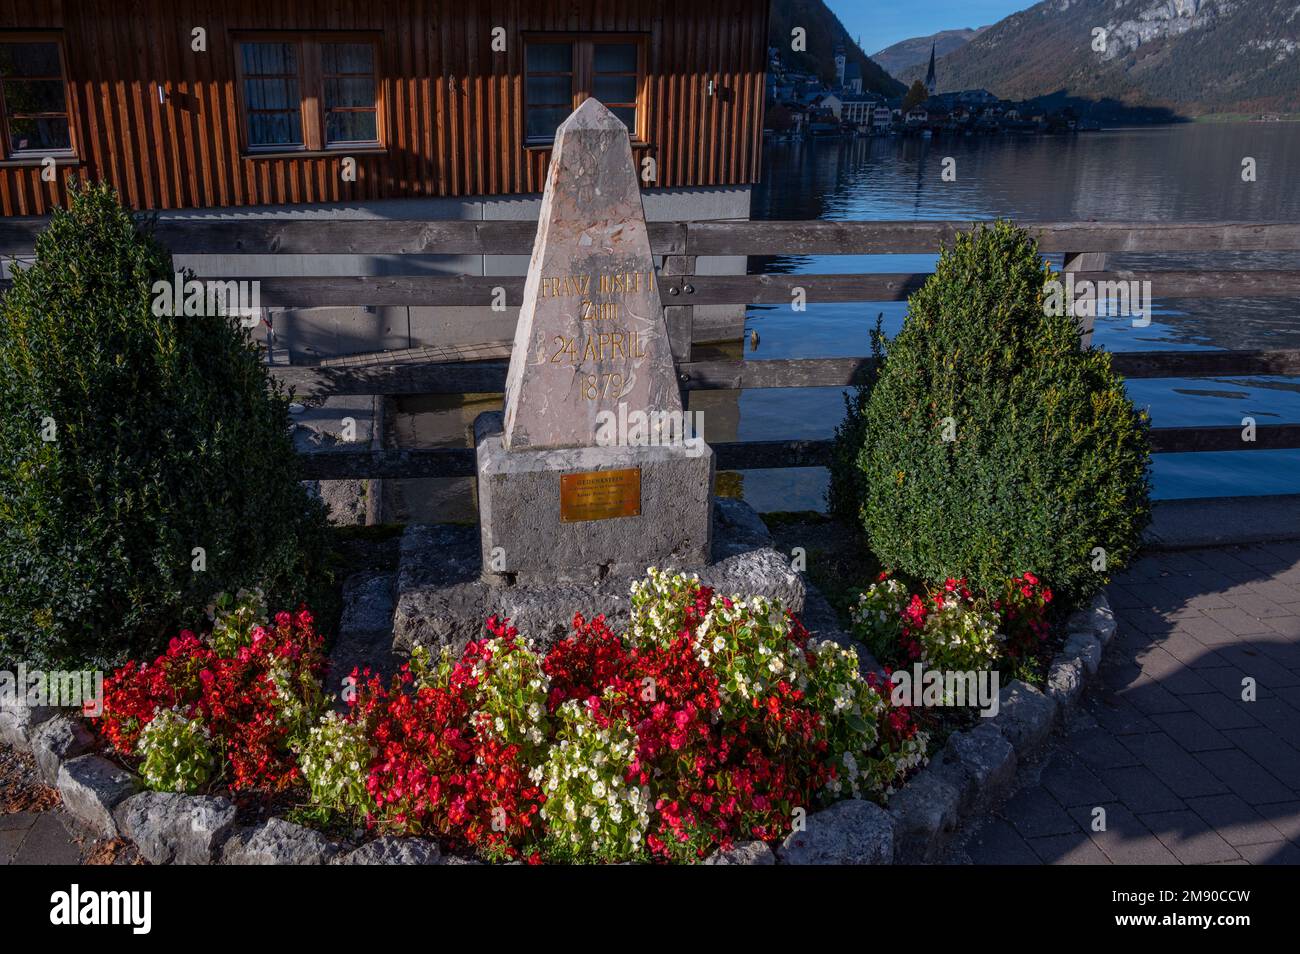 17th october,2022,Hallstatt,Austria.View of a memorial for the emperor Franz Joseph 1 at the salt mine village of Hallstatt, Austria. Stock Photo